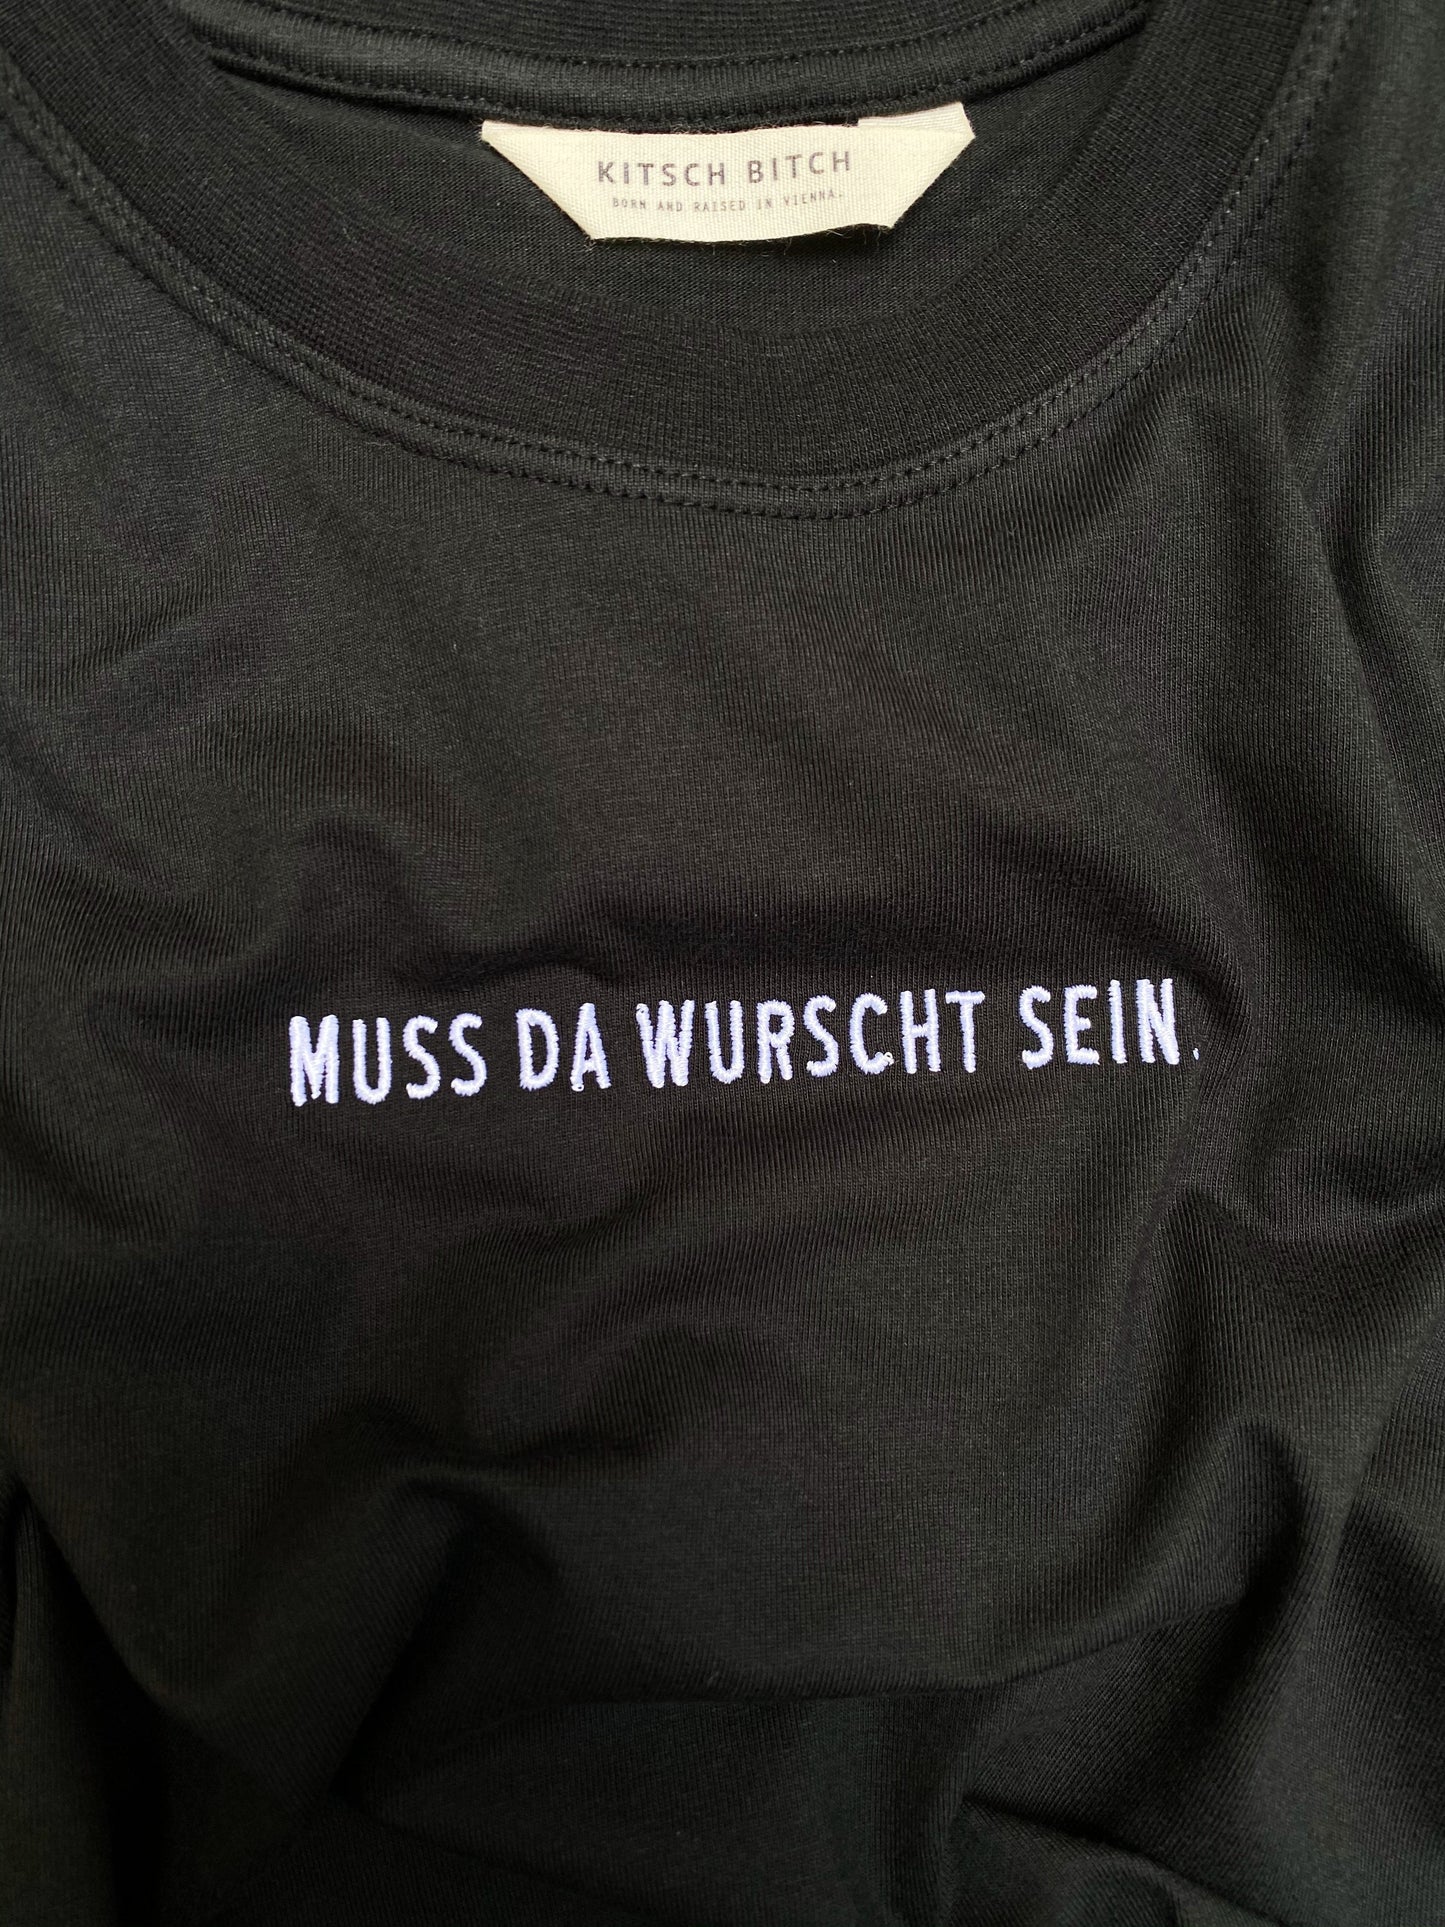 KITSCH BITCH Muss Da Wurscht Sein Embroidery Unisex T-Shirt